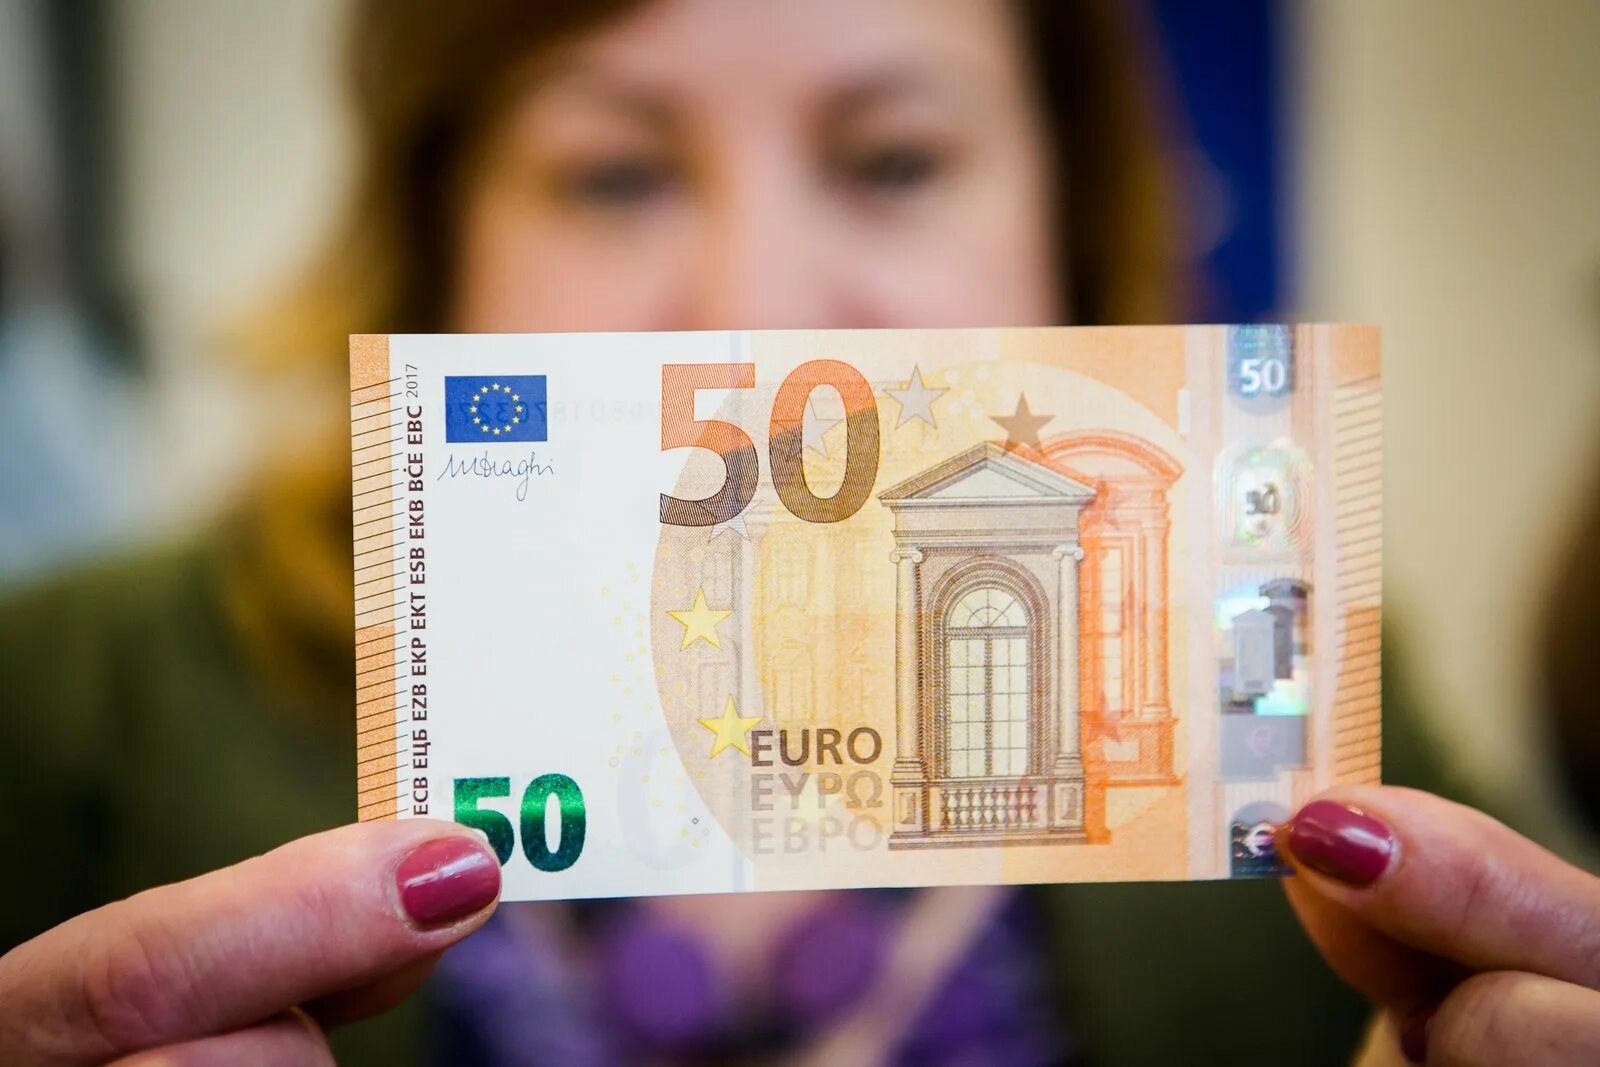 50 Евро купюра. Банкноты 50 евро. 50 Евро новая банкнота. Новые купюры евро 50.